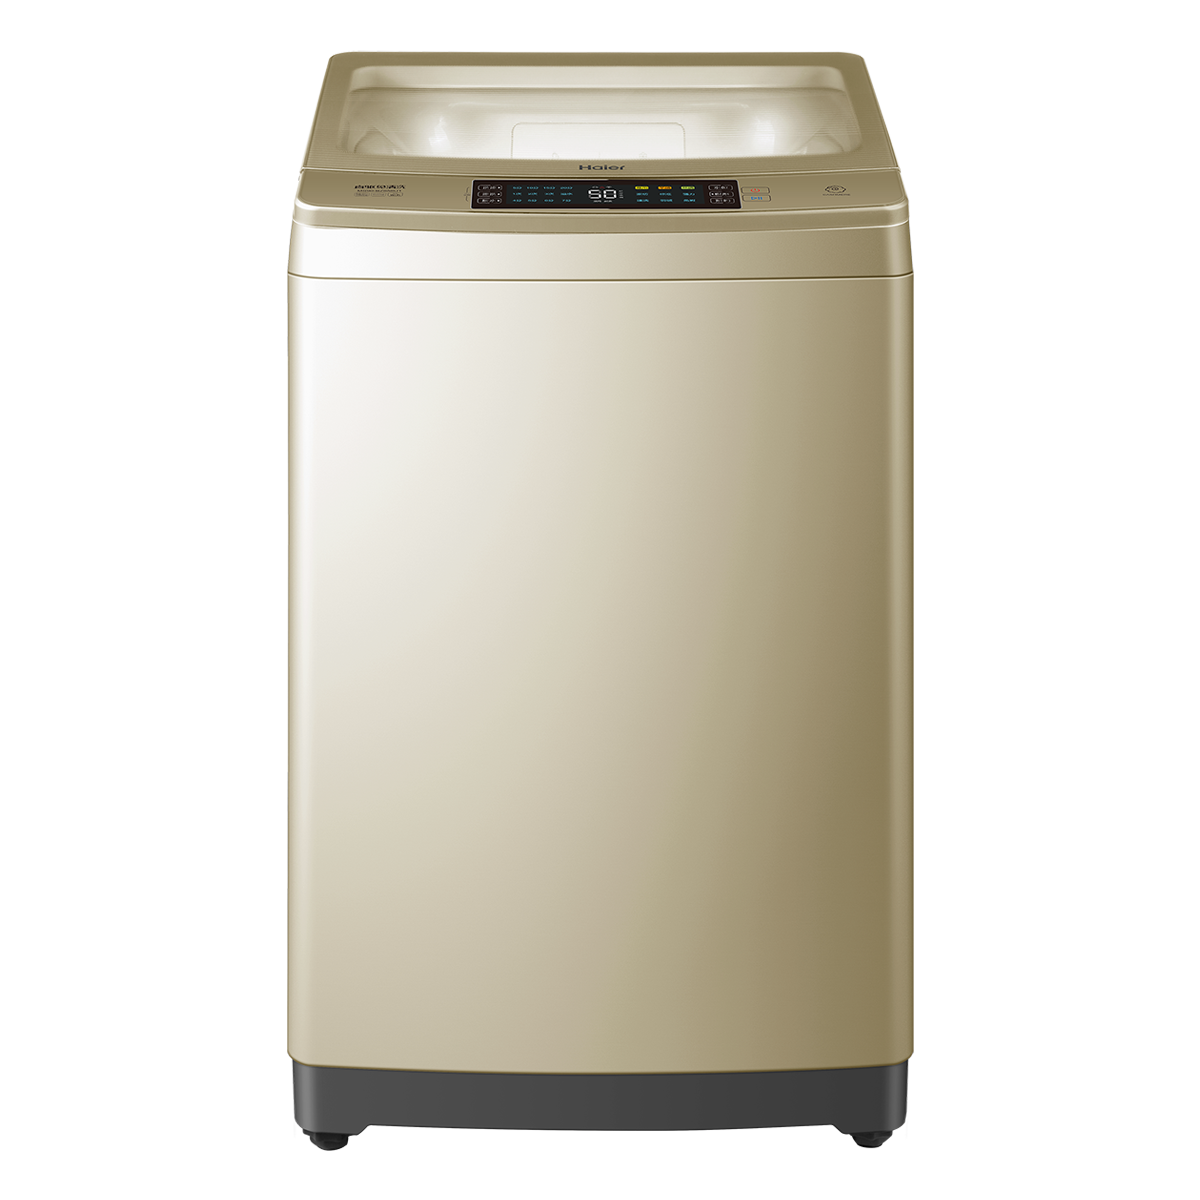 海尔Haier洗衣机 MS90-BZ858U1 说明书